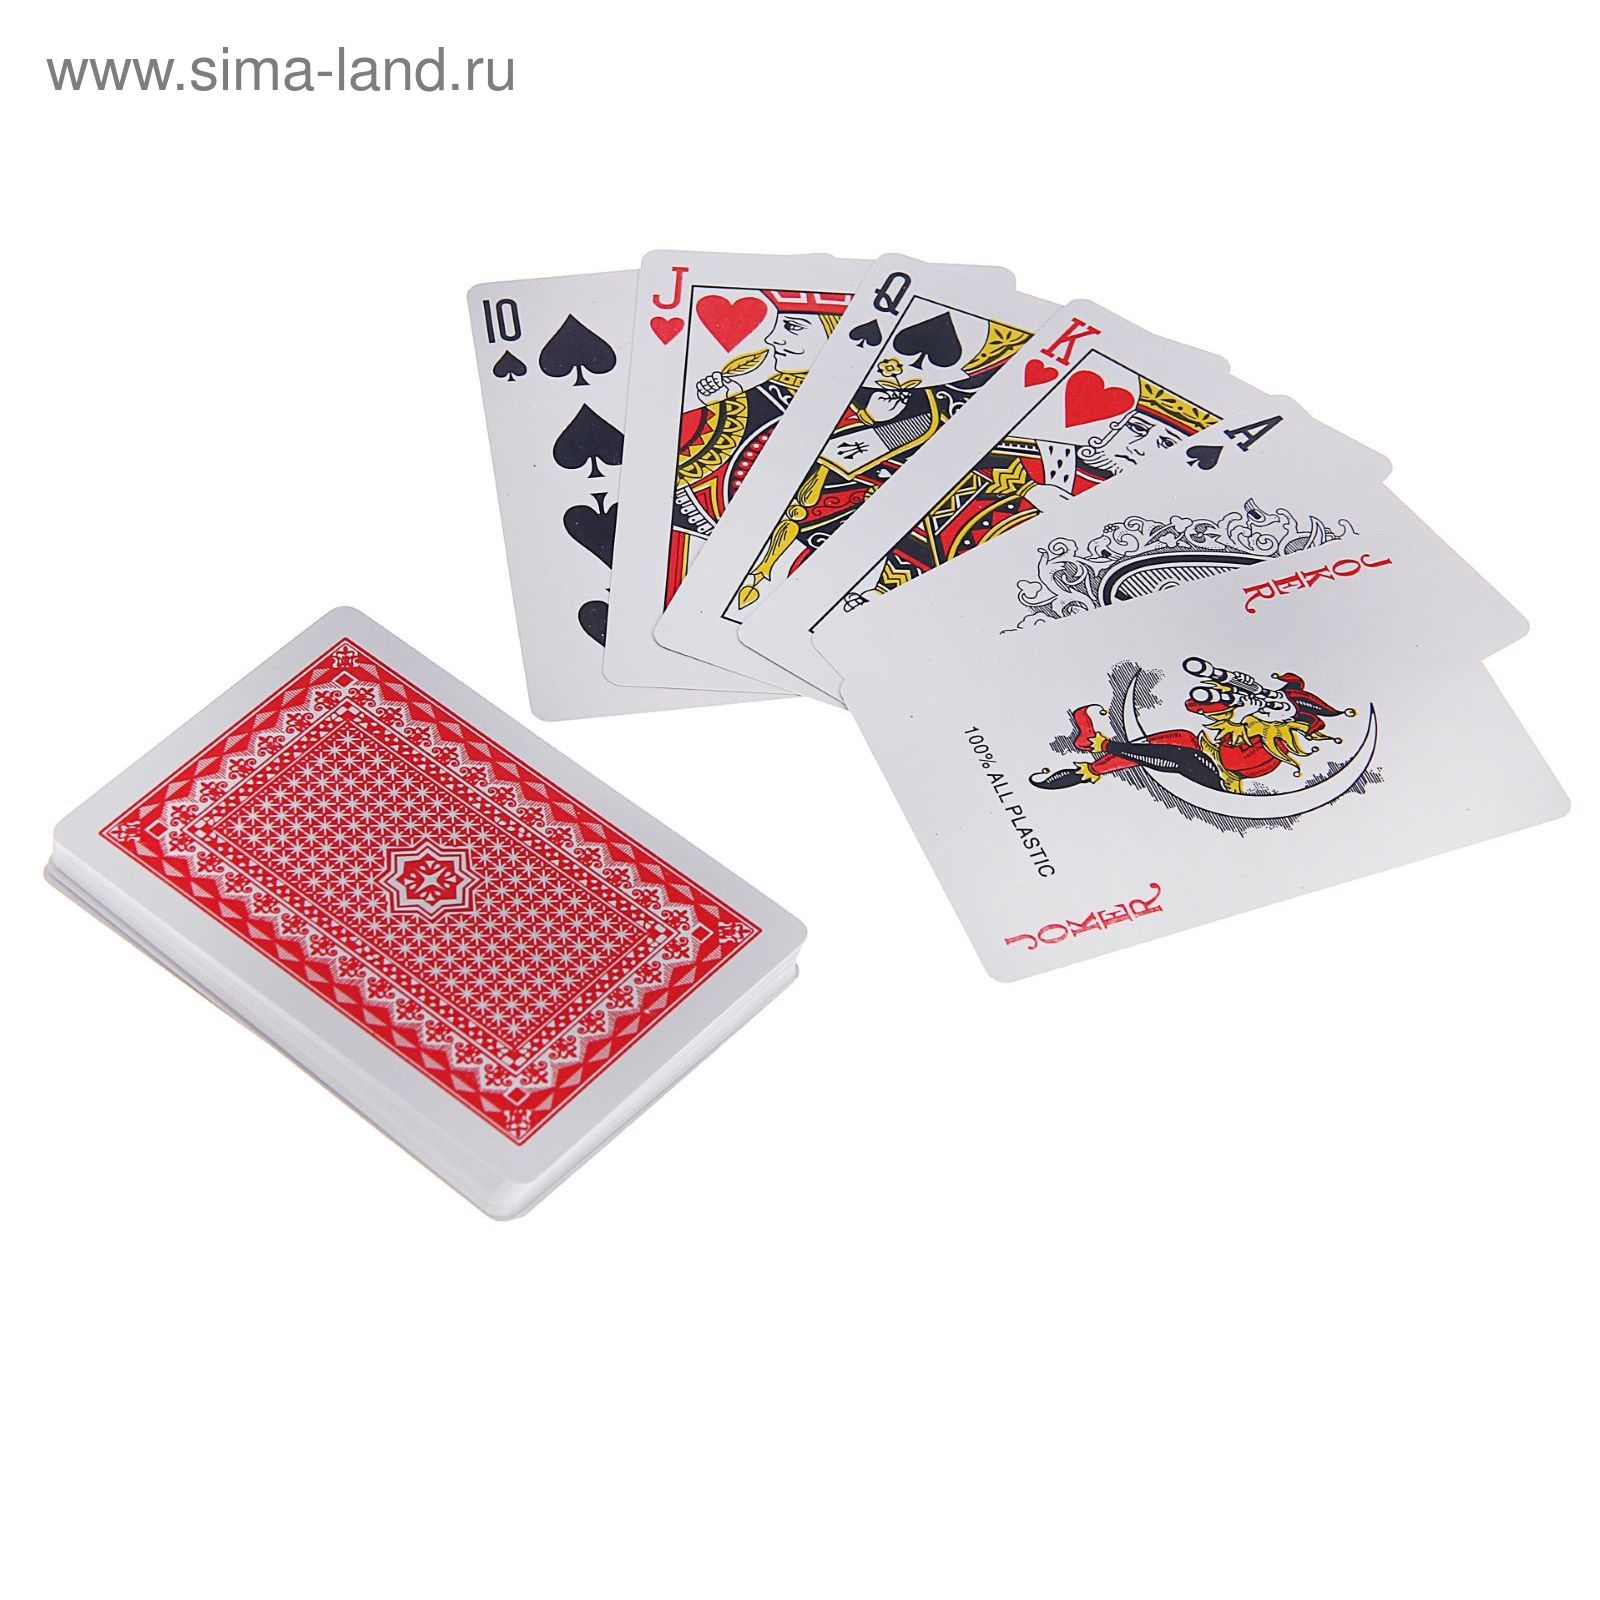 Карты такой купить. Карты игральные пластиковые "Royal", 54 шт, 19 мкм, 8.8×5.7 см, микс. Карты игральные OKROYAL 100% пластик. Карты игральные 54 л. пласт. Карты Royal 100 Plastic.